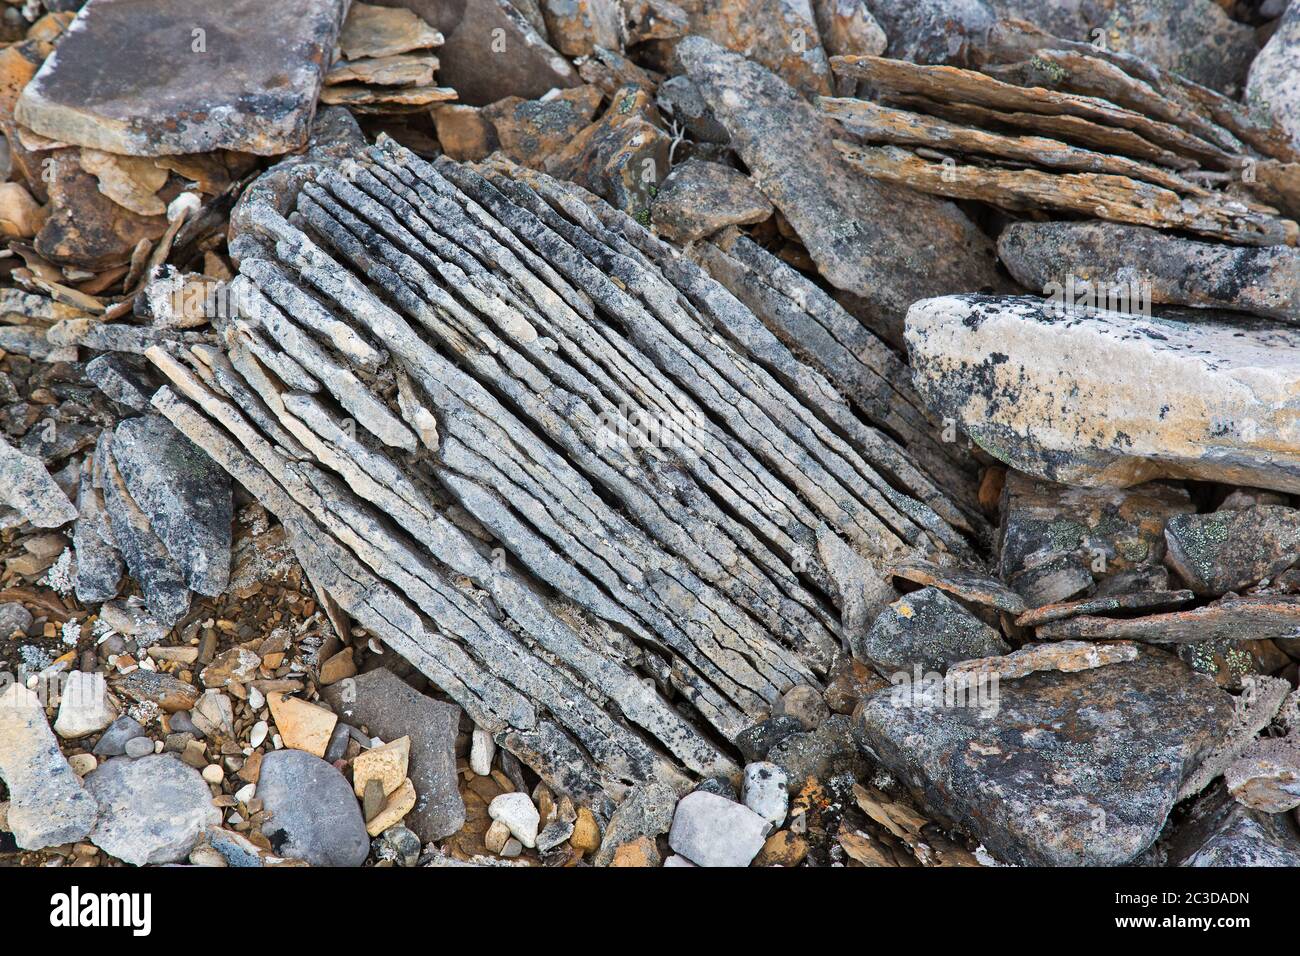 Nahaufnahme von zerbrochenem Sedimentgestein, Schiefer / Schiefer, die durch Frostverwitterung auf Spitzbergen, Norwegen, entlang bestehender Fugen gebrochen wurden Stockfoto